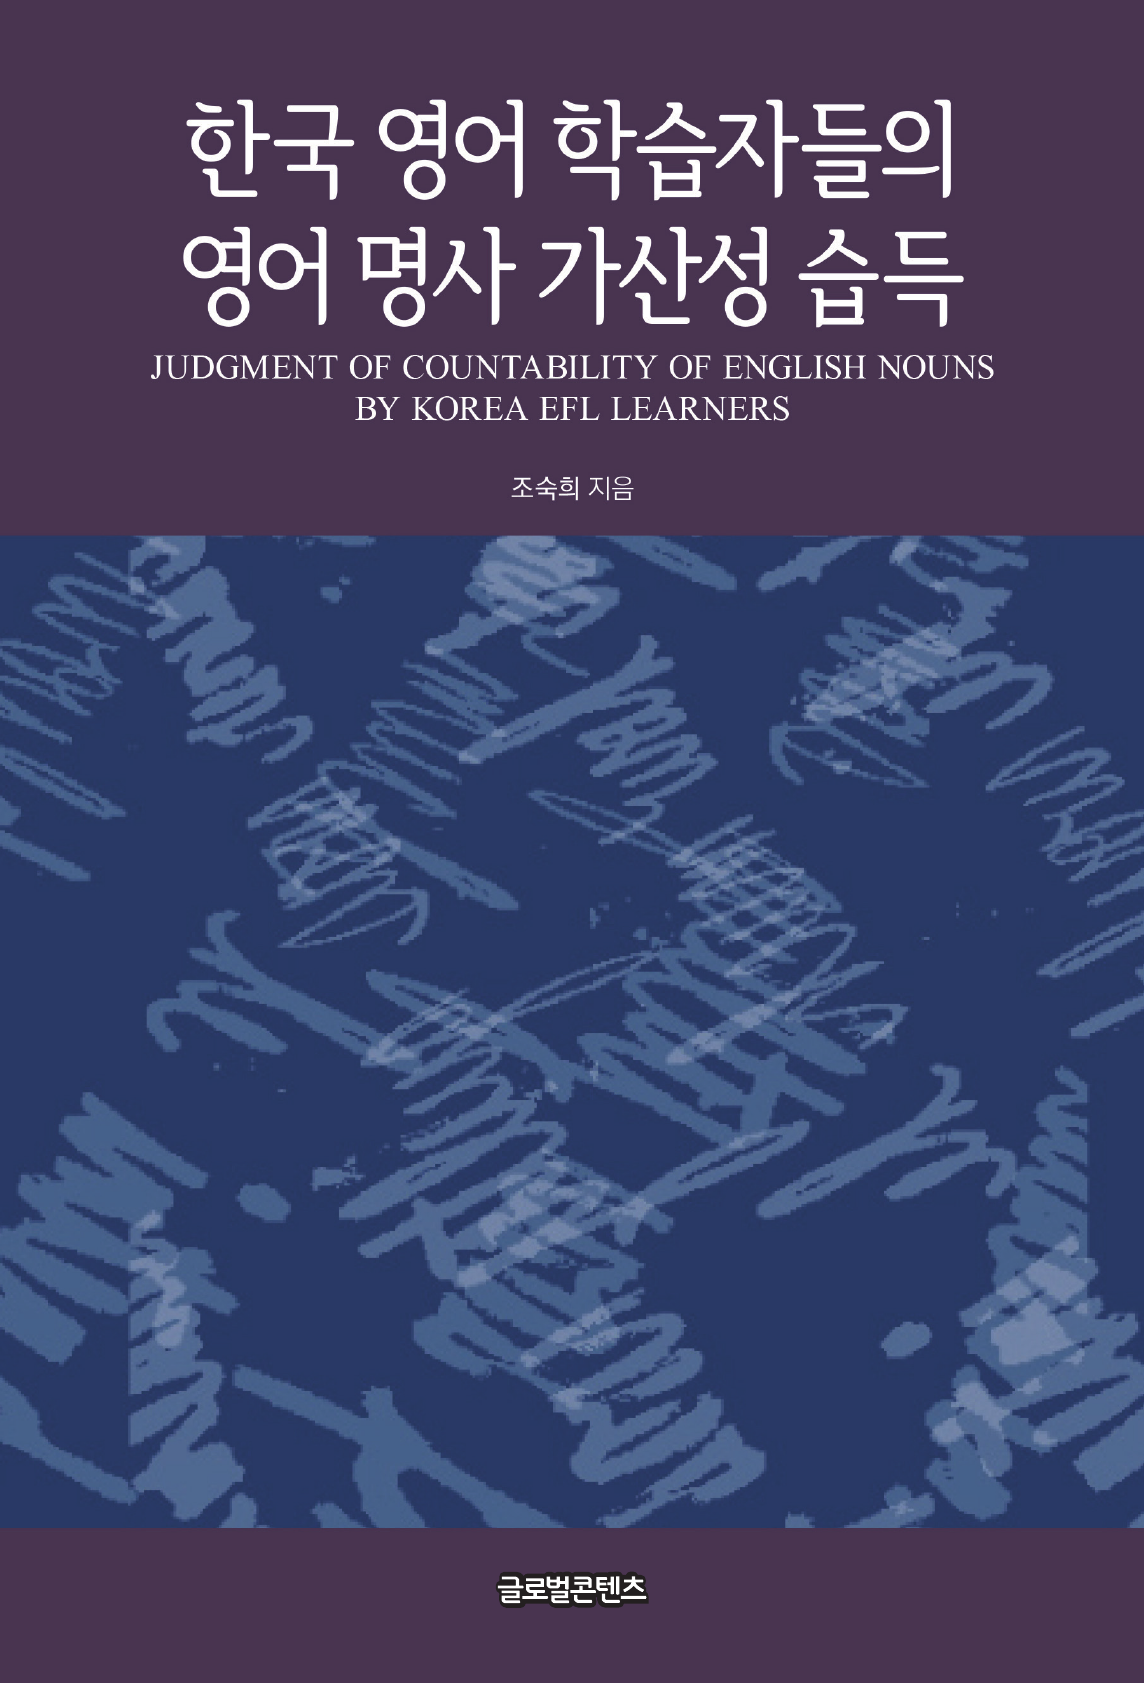 한국 영어 학습자들의 영어 명사 가산성 습득